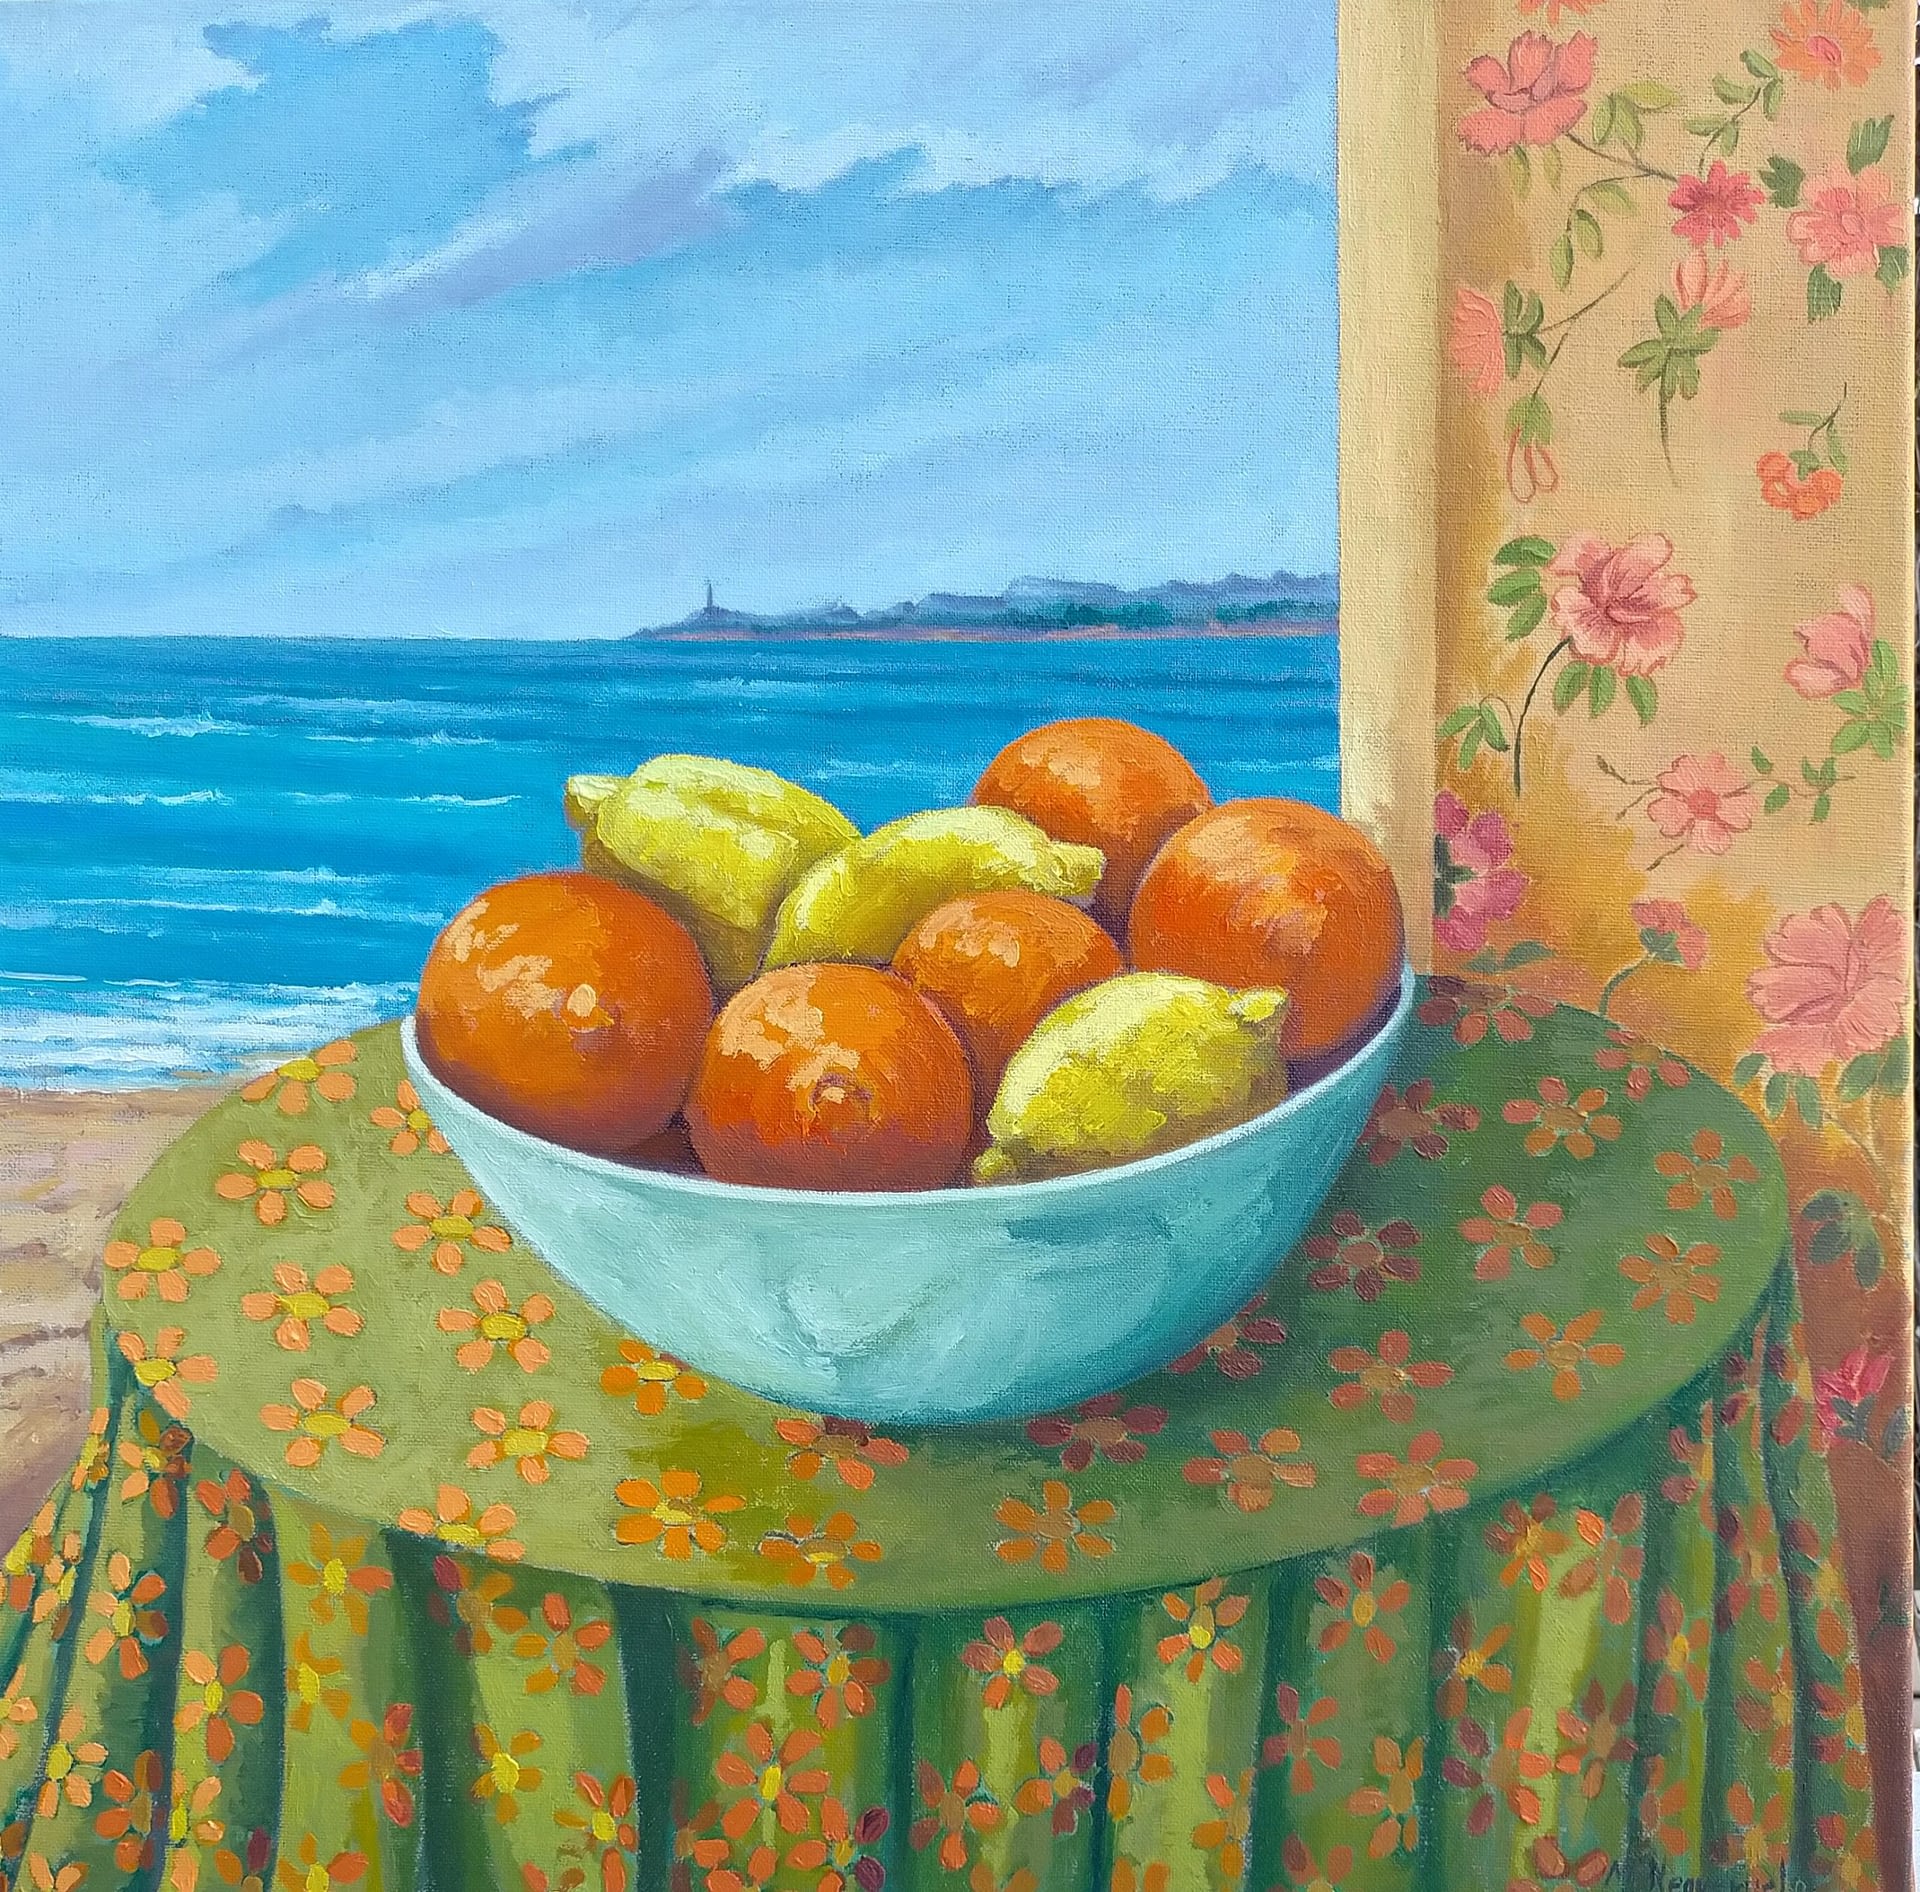 Naranjas y Limones